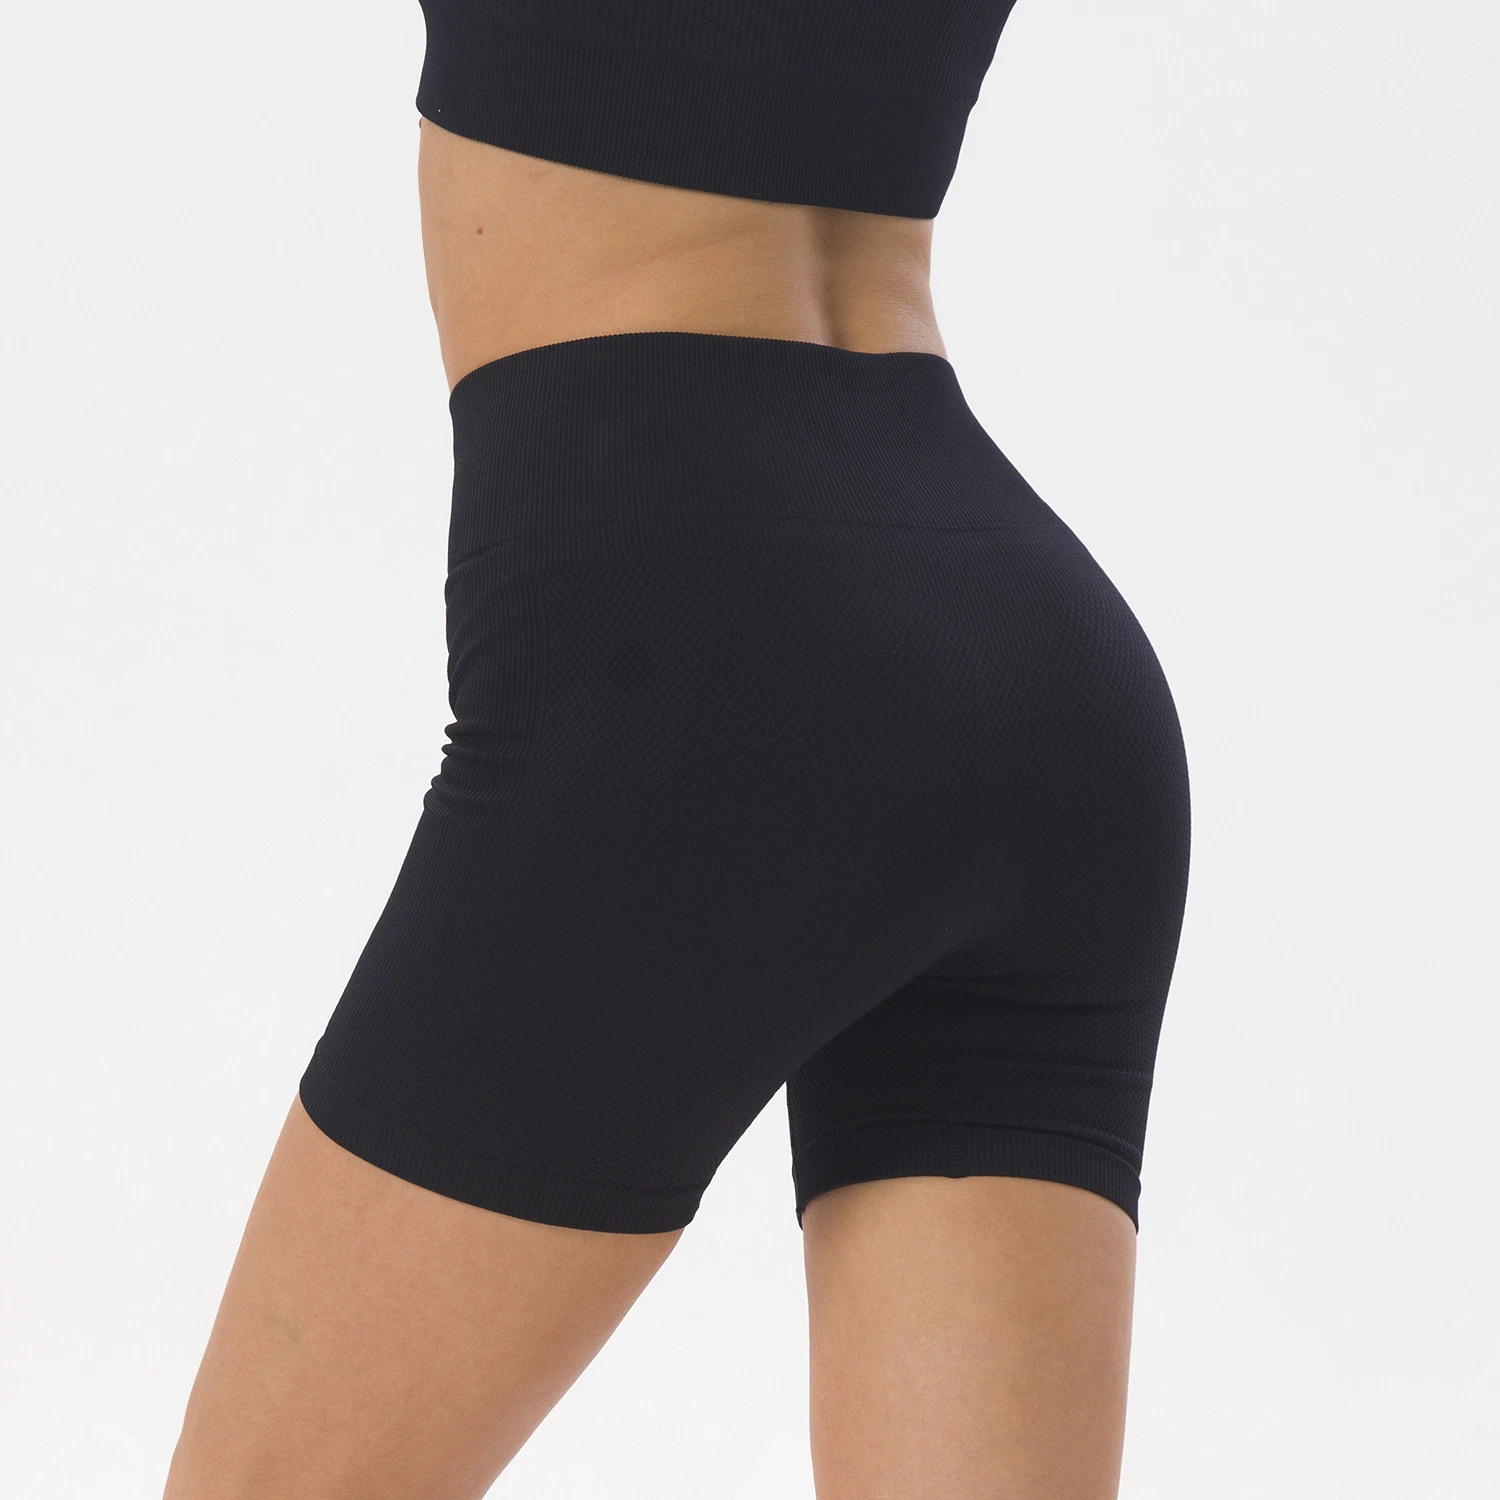 Großhandel von neuen Frauen Sexy eine Seite Tasche Sport Shorts Strickhose Nahtloses Fitness Hoch Taille Yoga Shorts